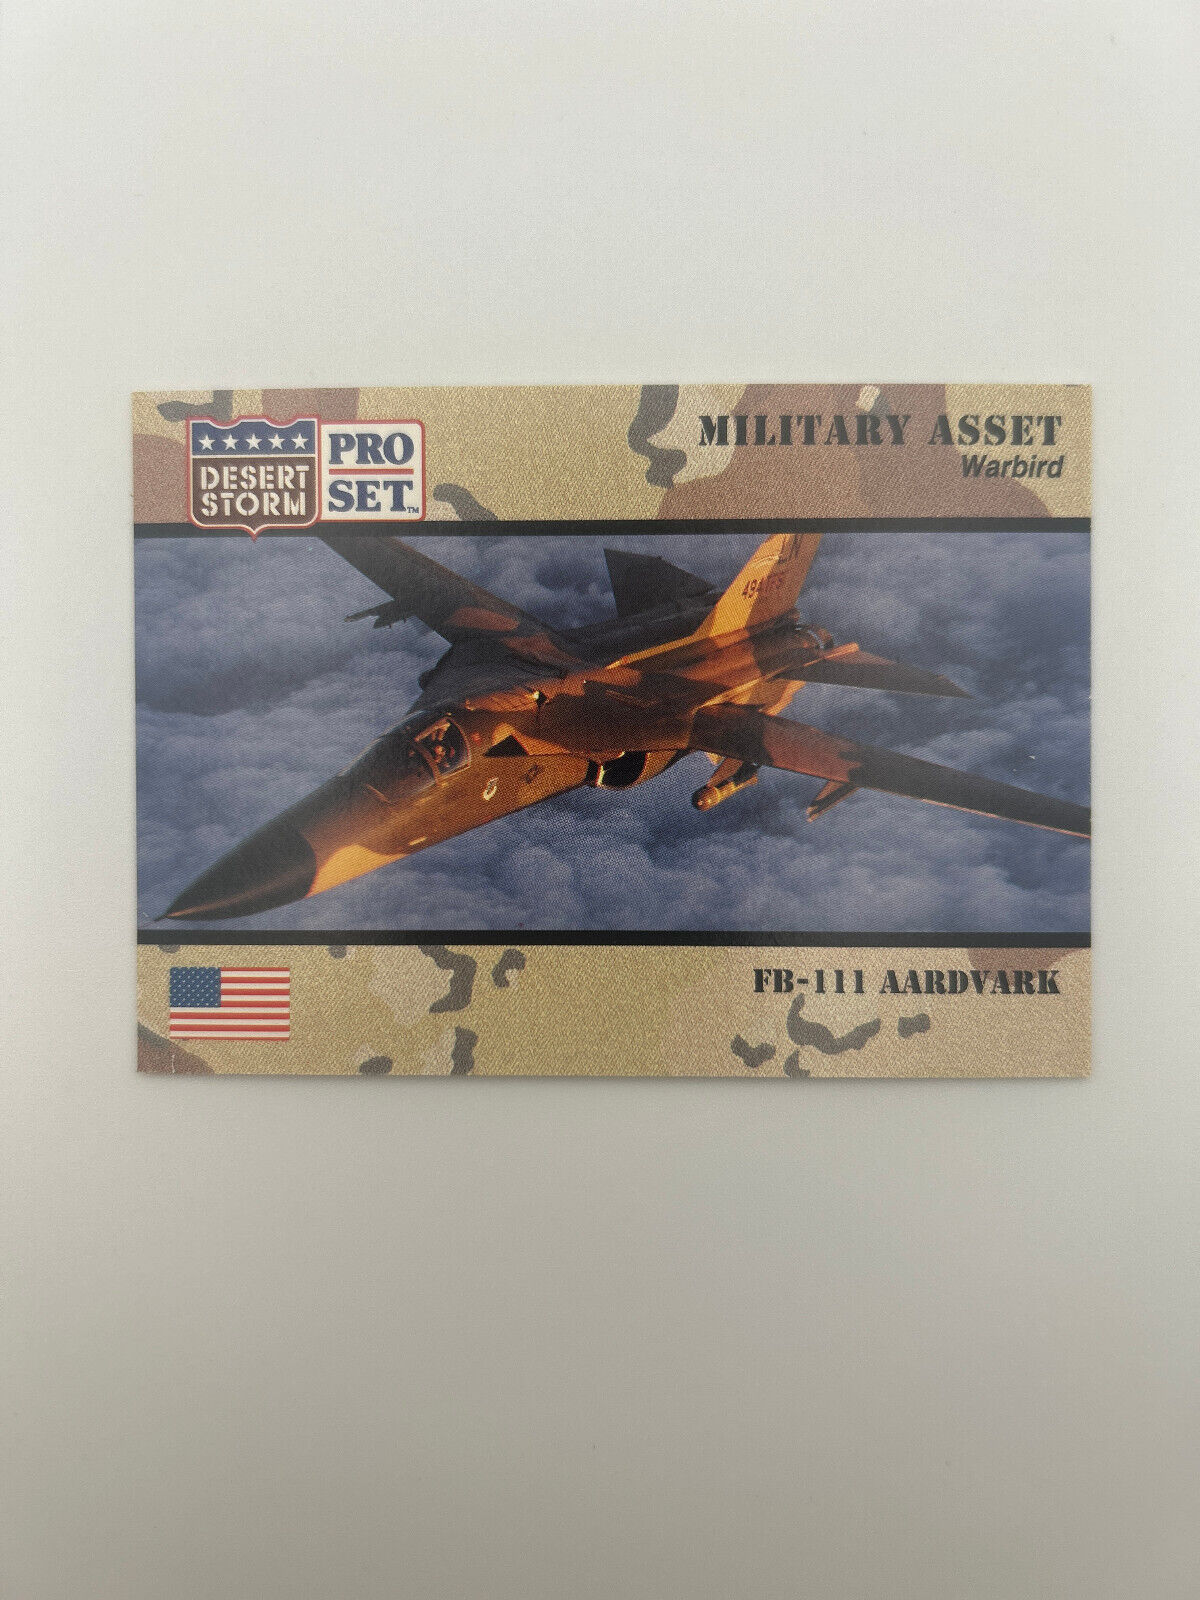 FB-111 Aardvark Warbird #220 1991 Pro Set Desert Storm Military Asset card